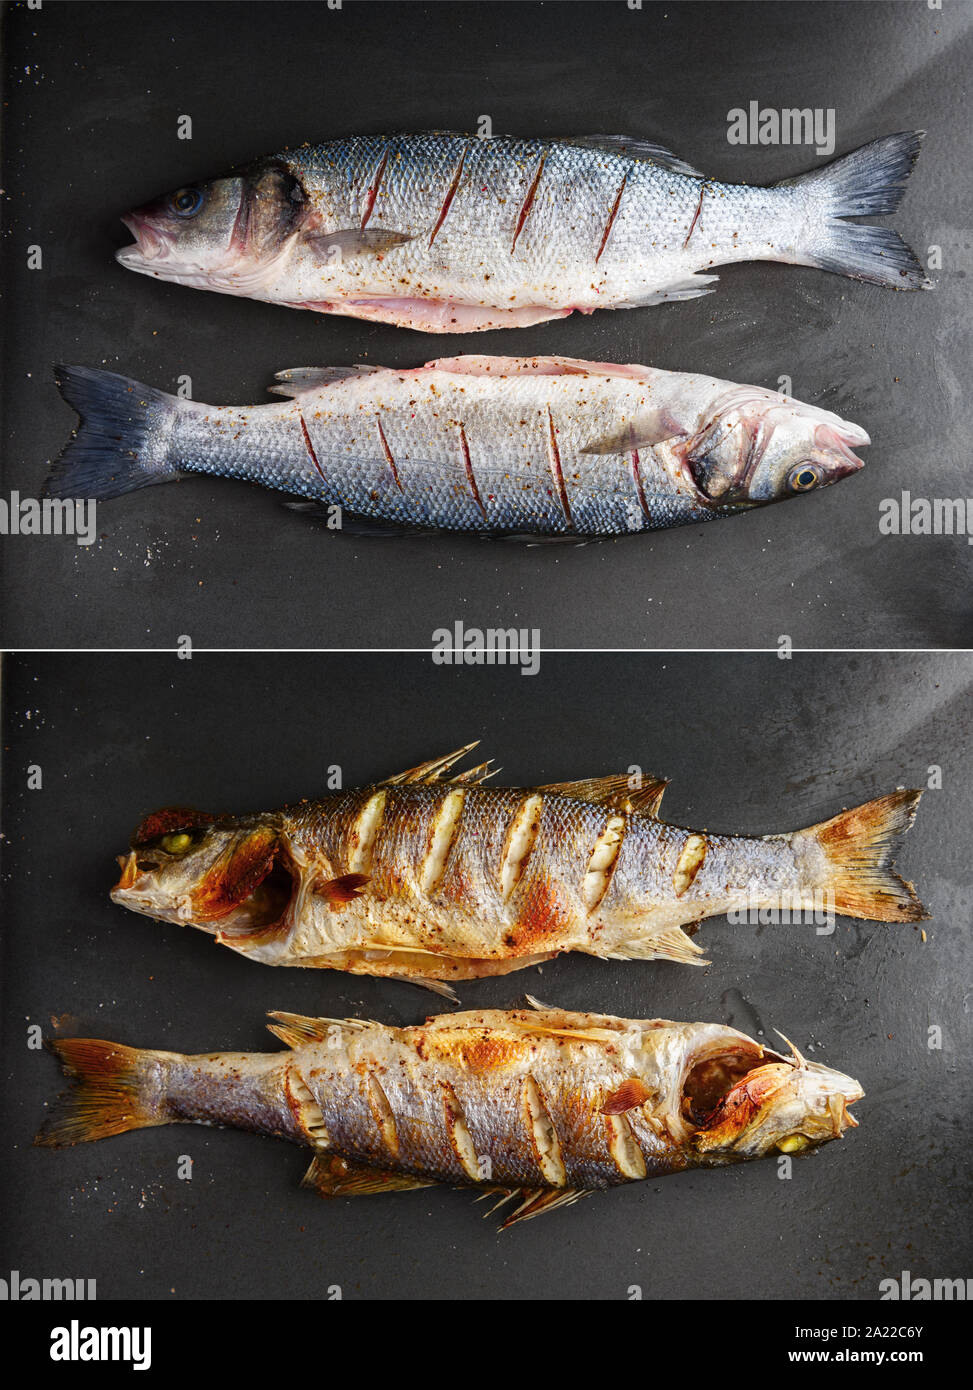 Les matières et les poissons bar grillé sur plaque noire. Avant et après la préparation. La photographie alimentaire Banque D'Images